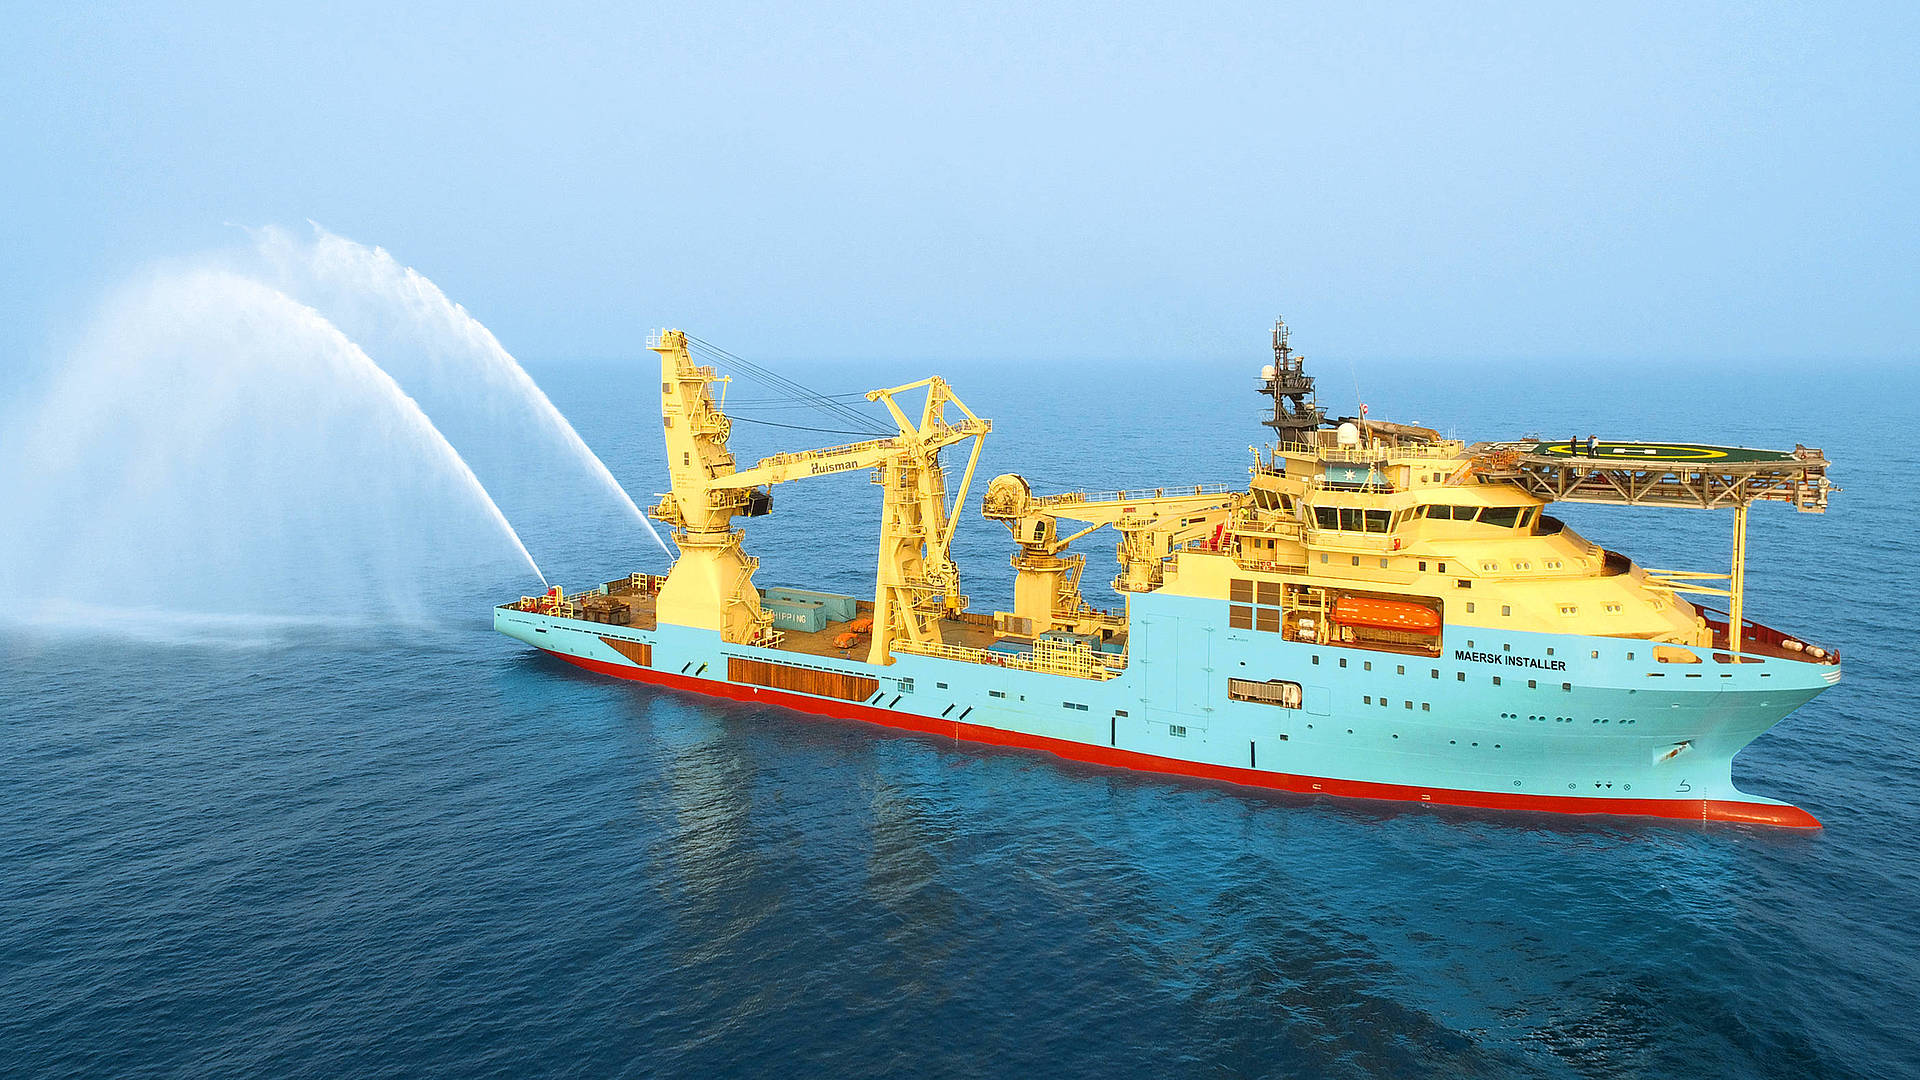 Maersk Installer Subsea Support Vessel